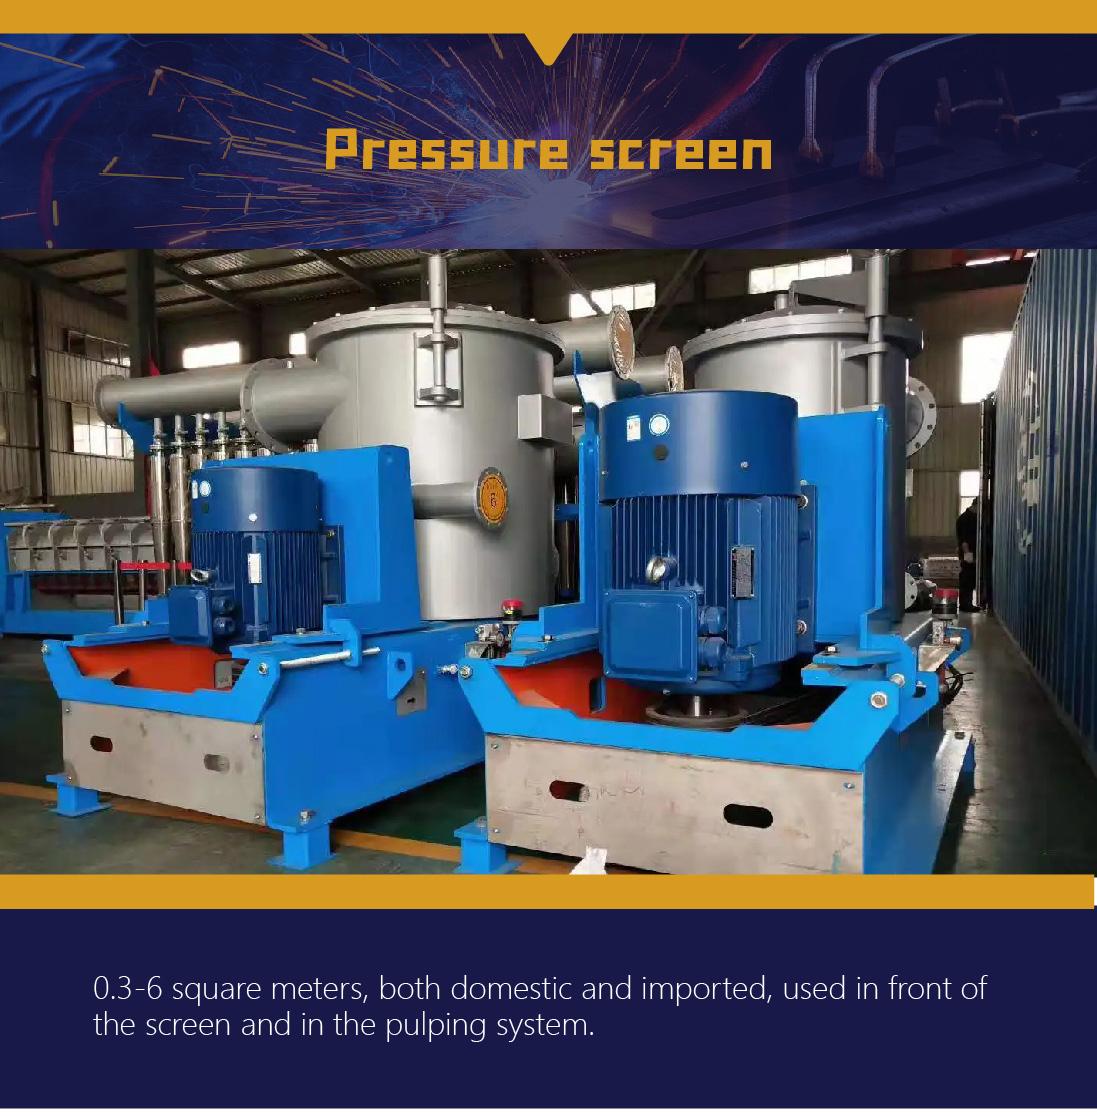 Paper pressure screen classification screen upflow pressure screen pulp machine